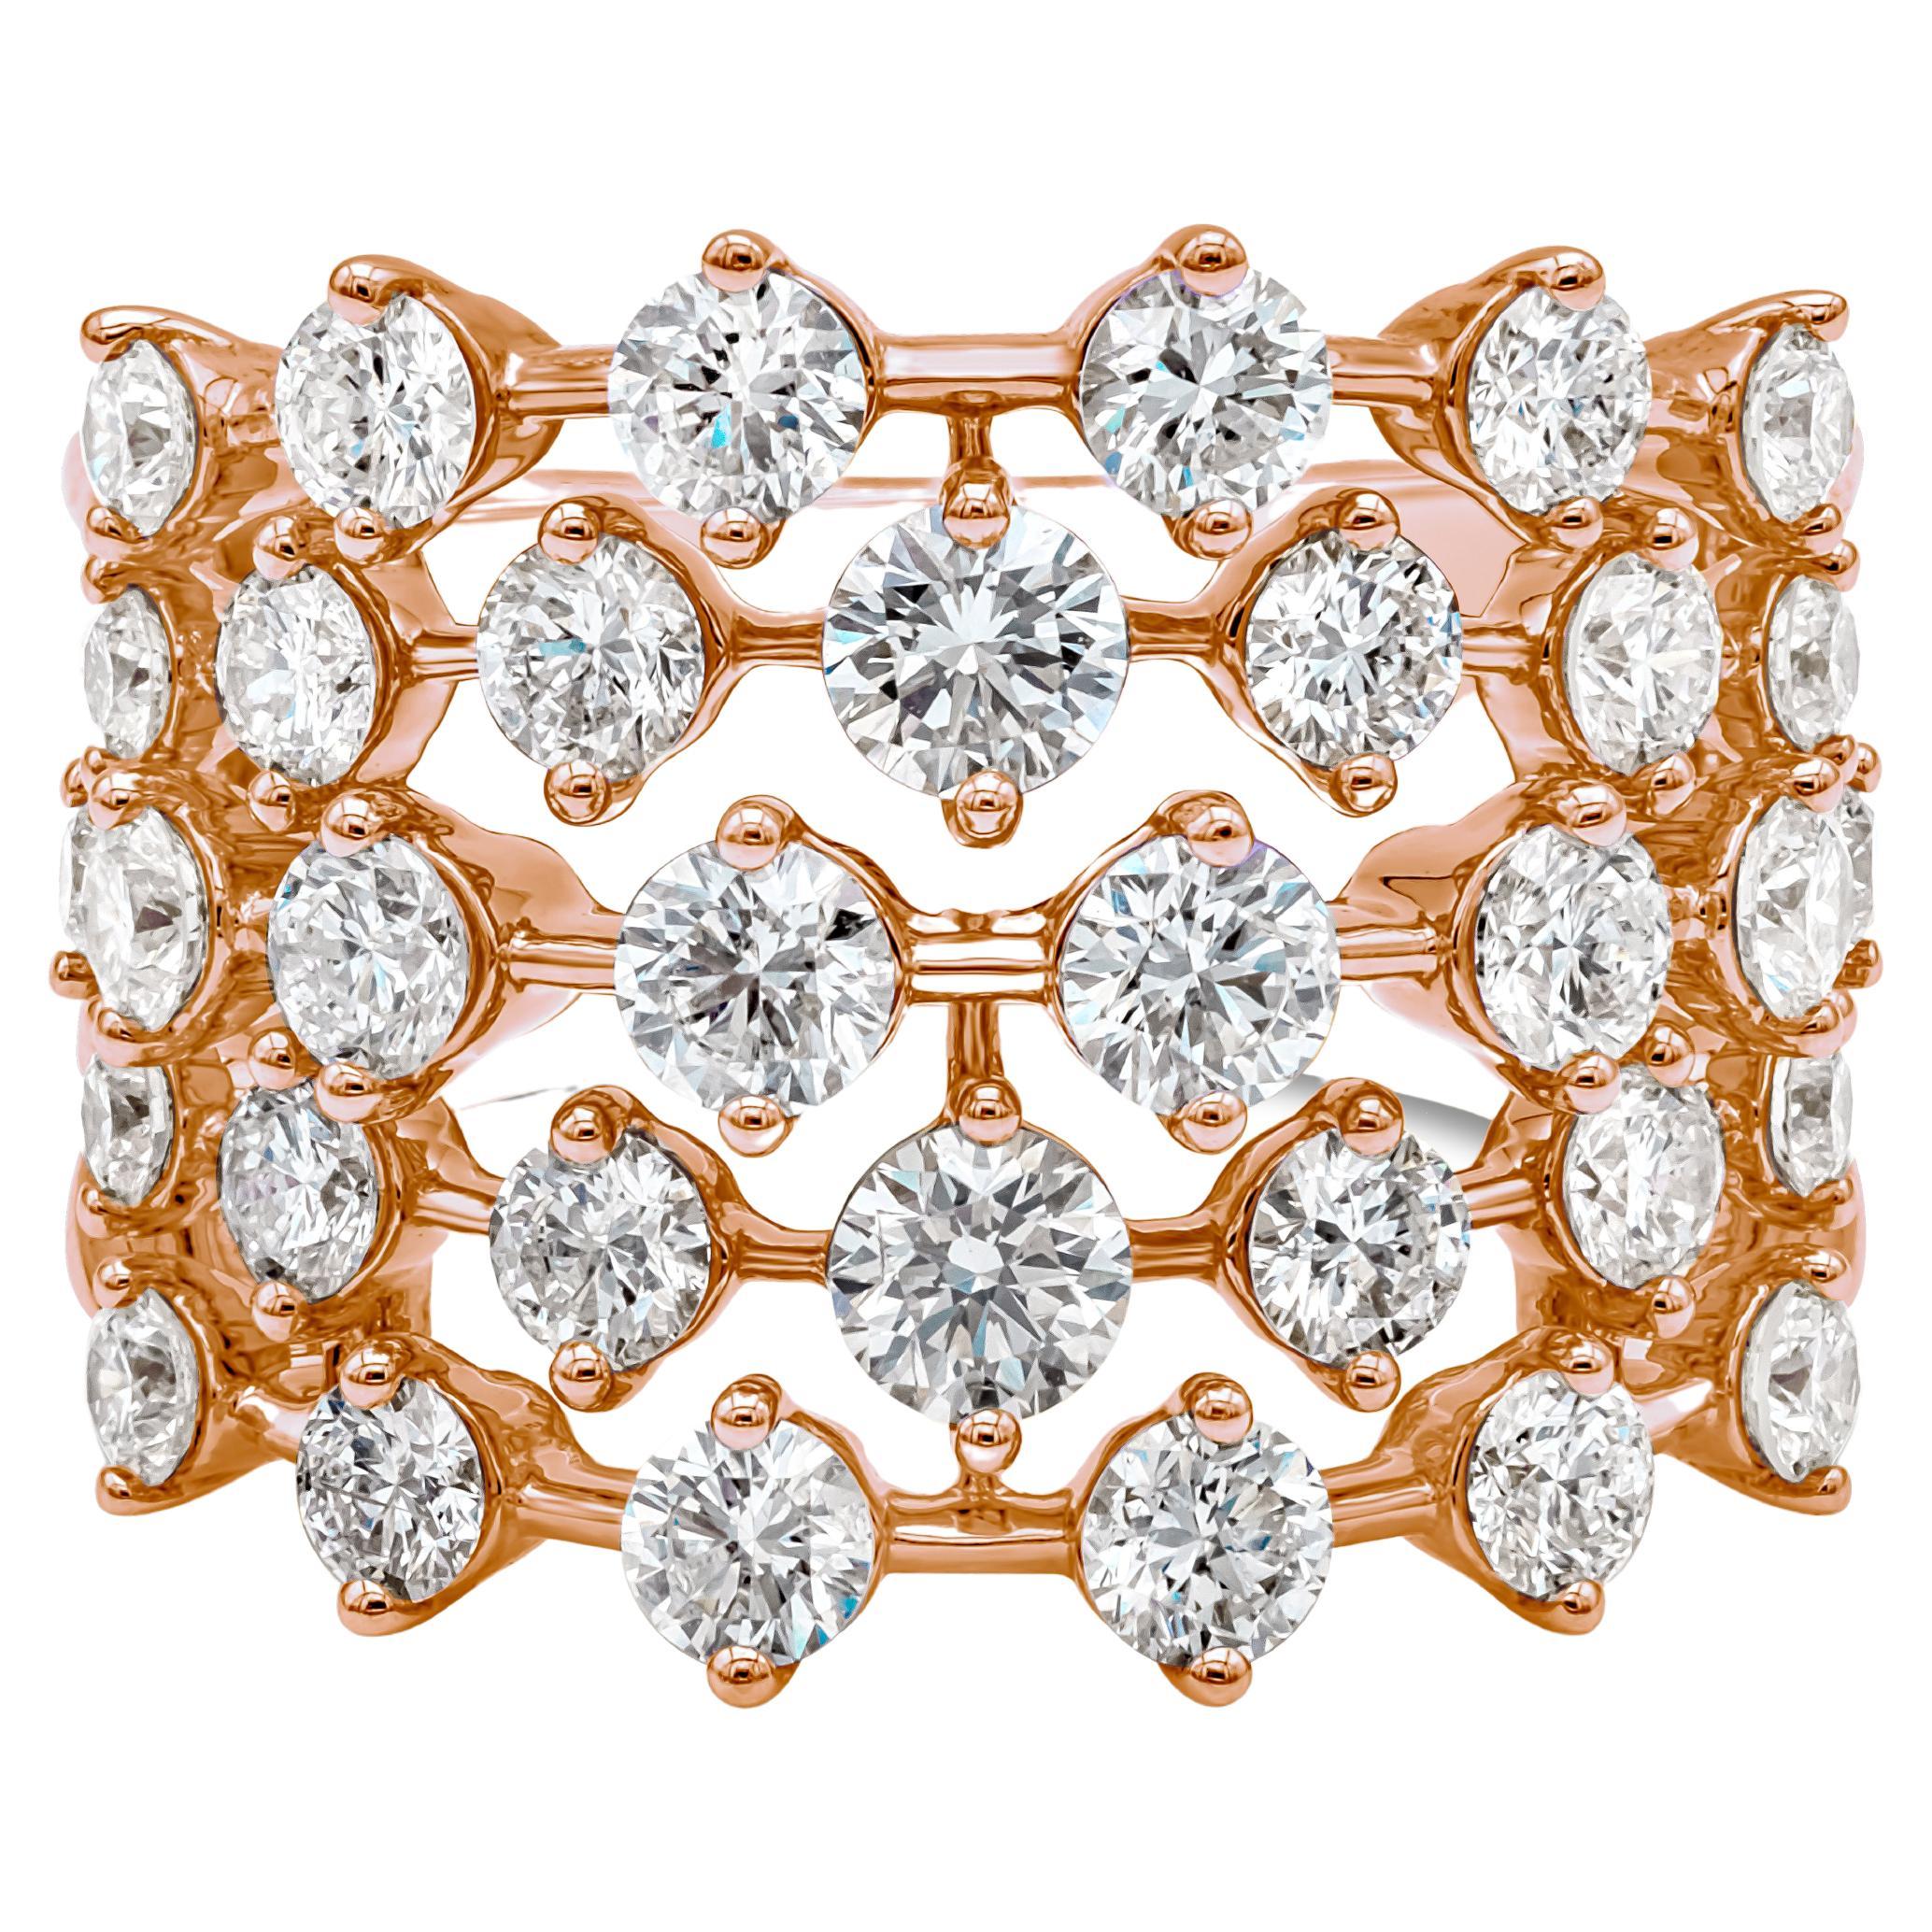 Roman Malakov 2.71 Carat Total Round Diamond Wide Fashion Ring in Rose Gold